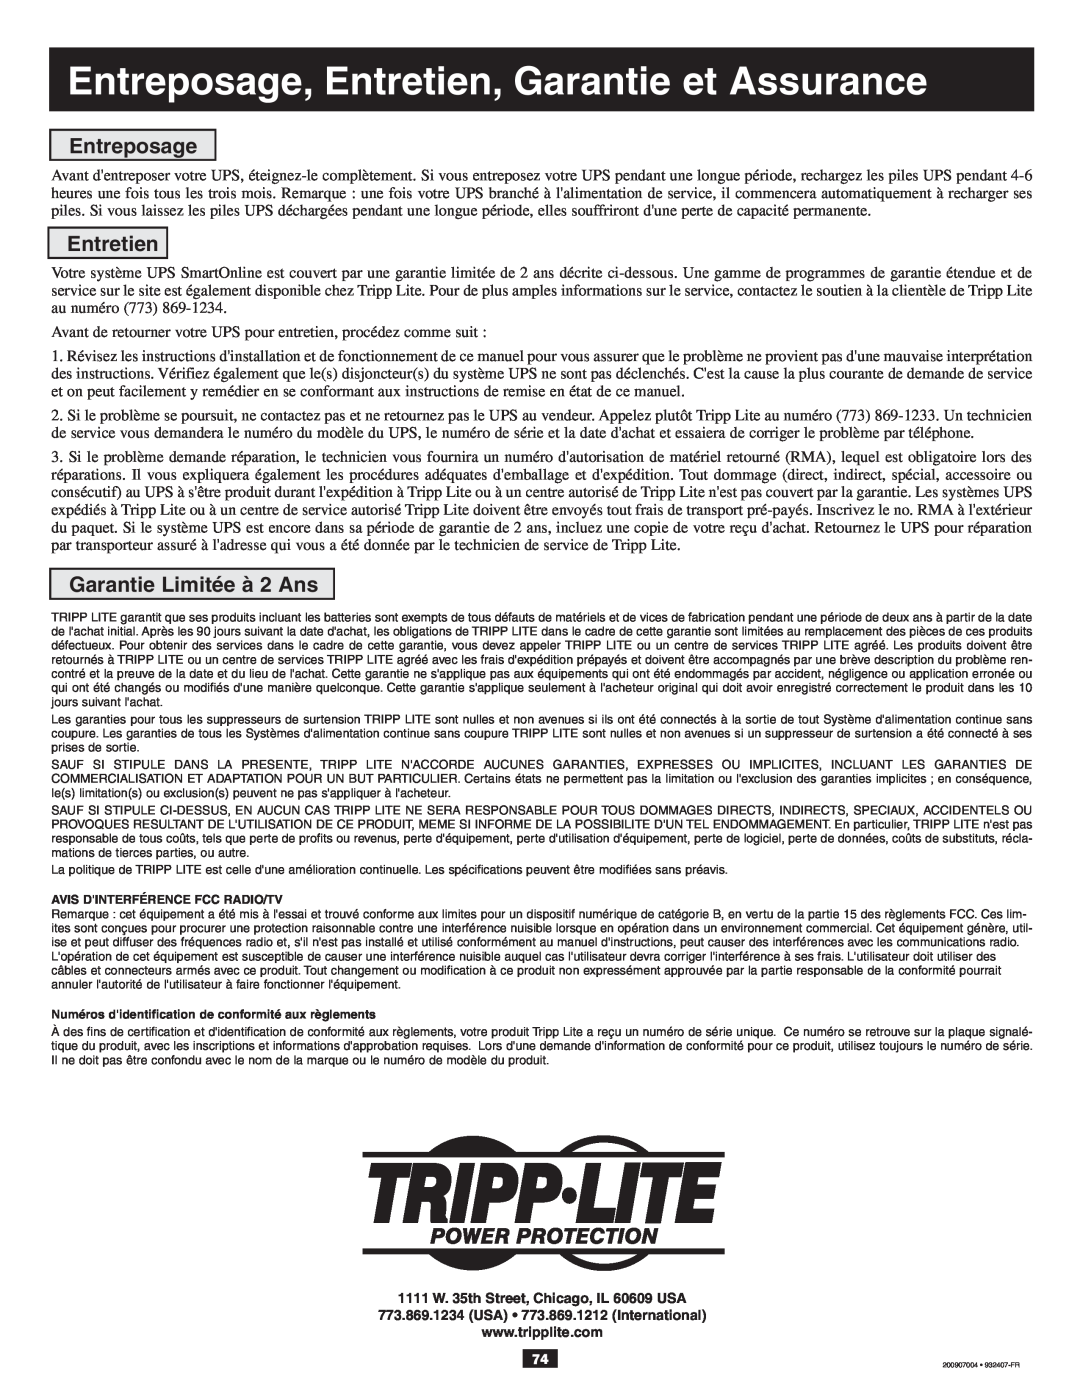 Tripp Lite 10KVA owner manual Entreposage, Entretien, Garantie et Assurance, Garantie Limitée à 2 Ans 